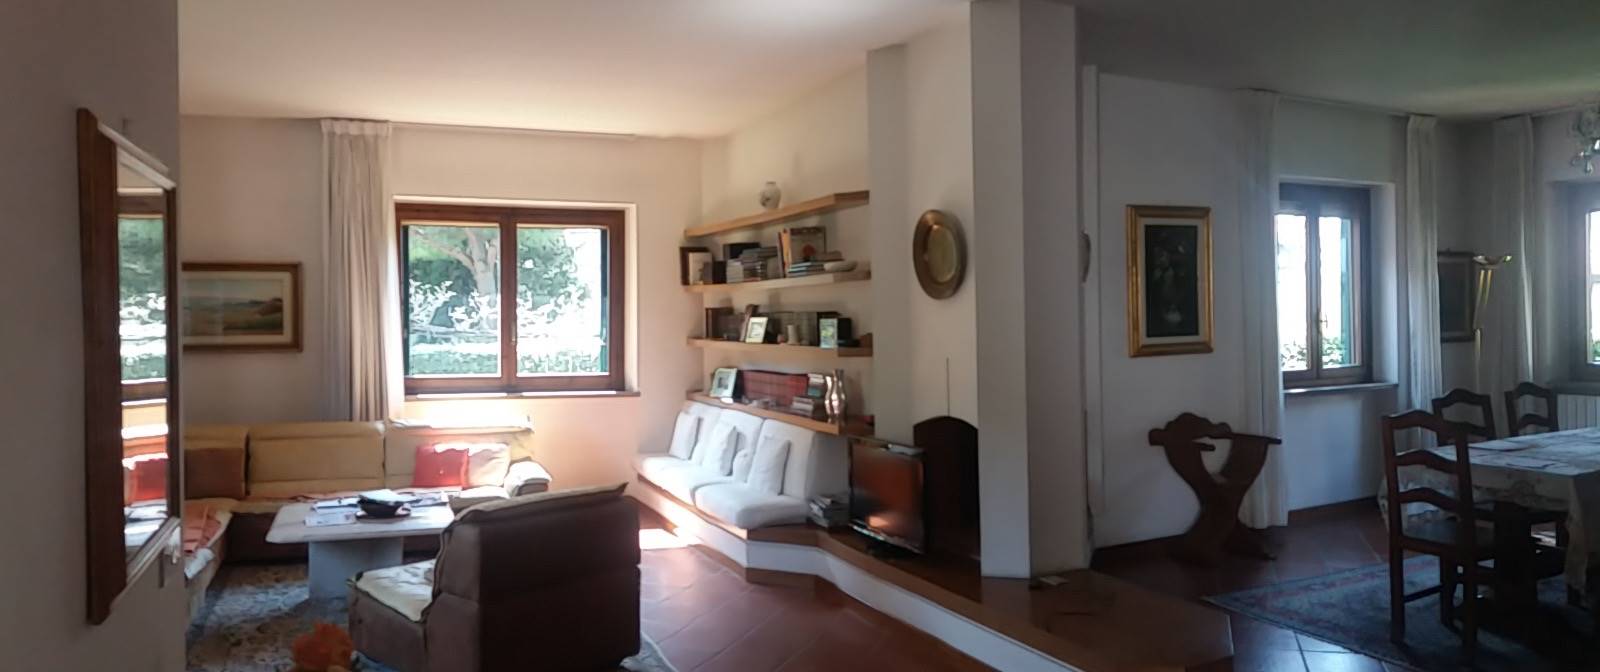 Villa Bifamiliare in vendita a Prato - Zona: Castellina